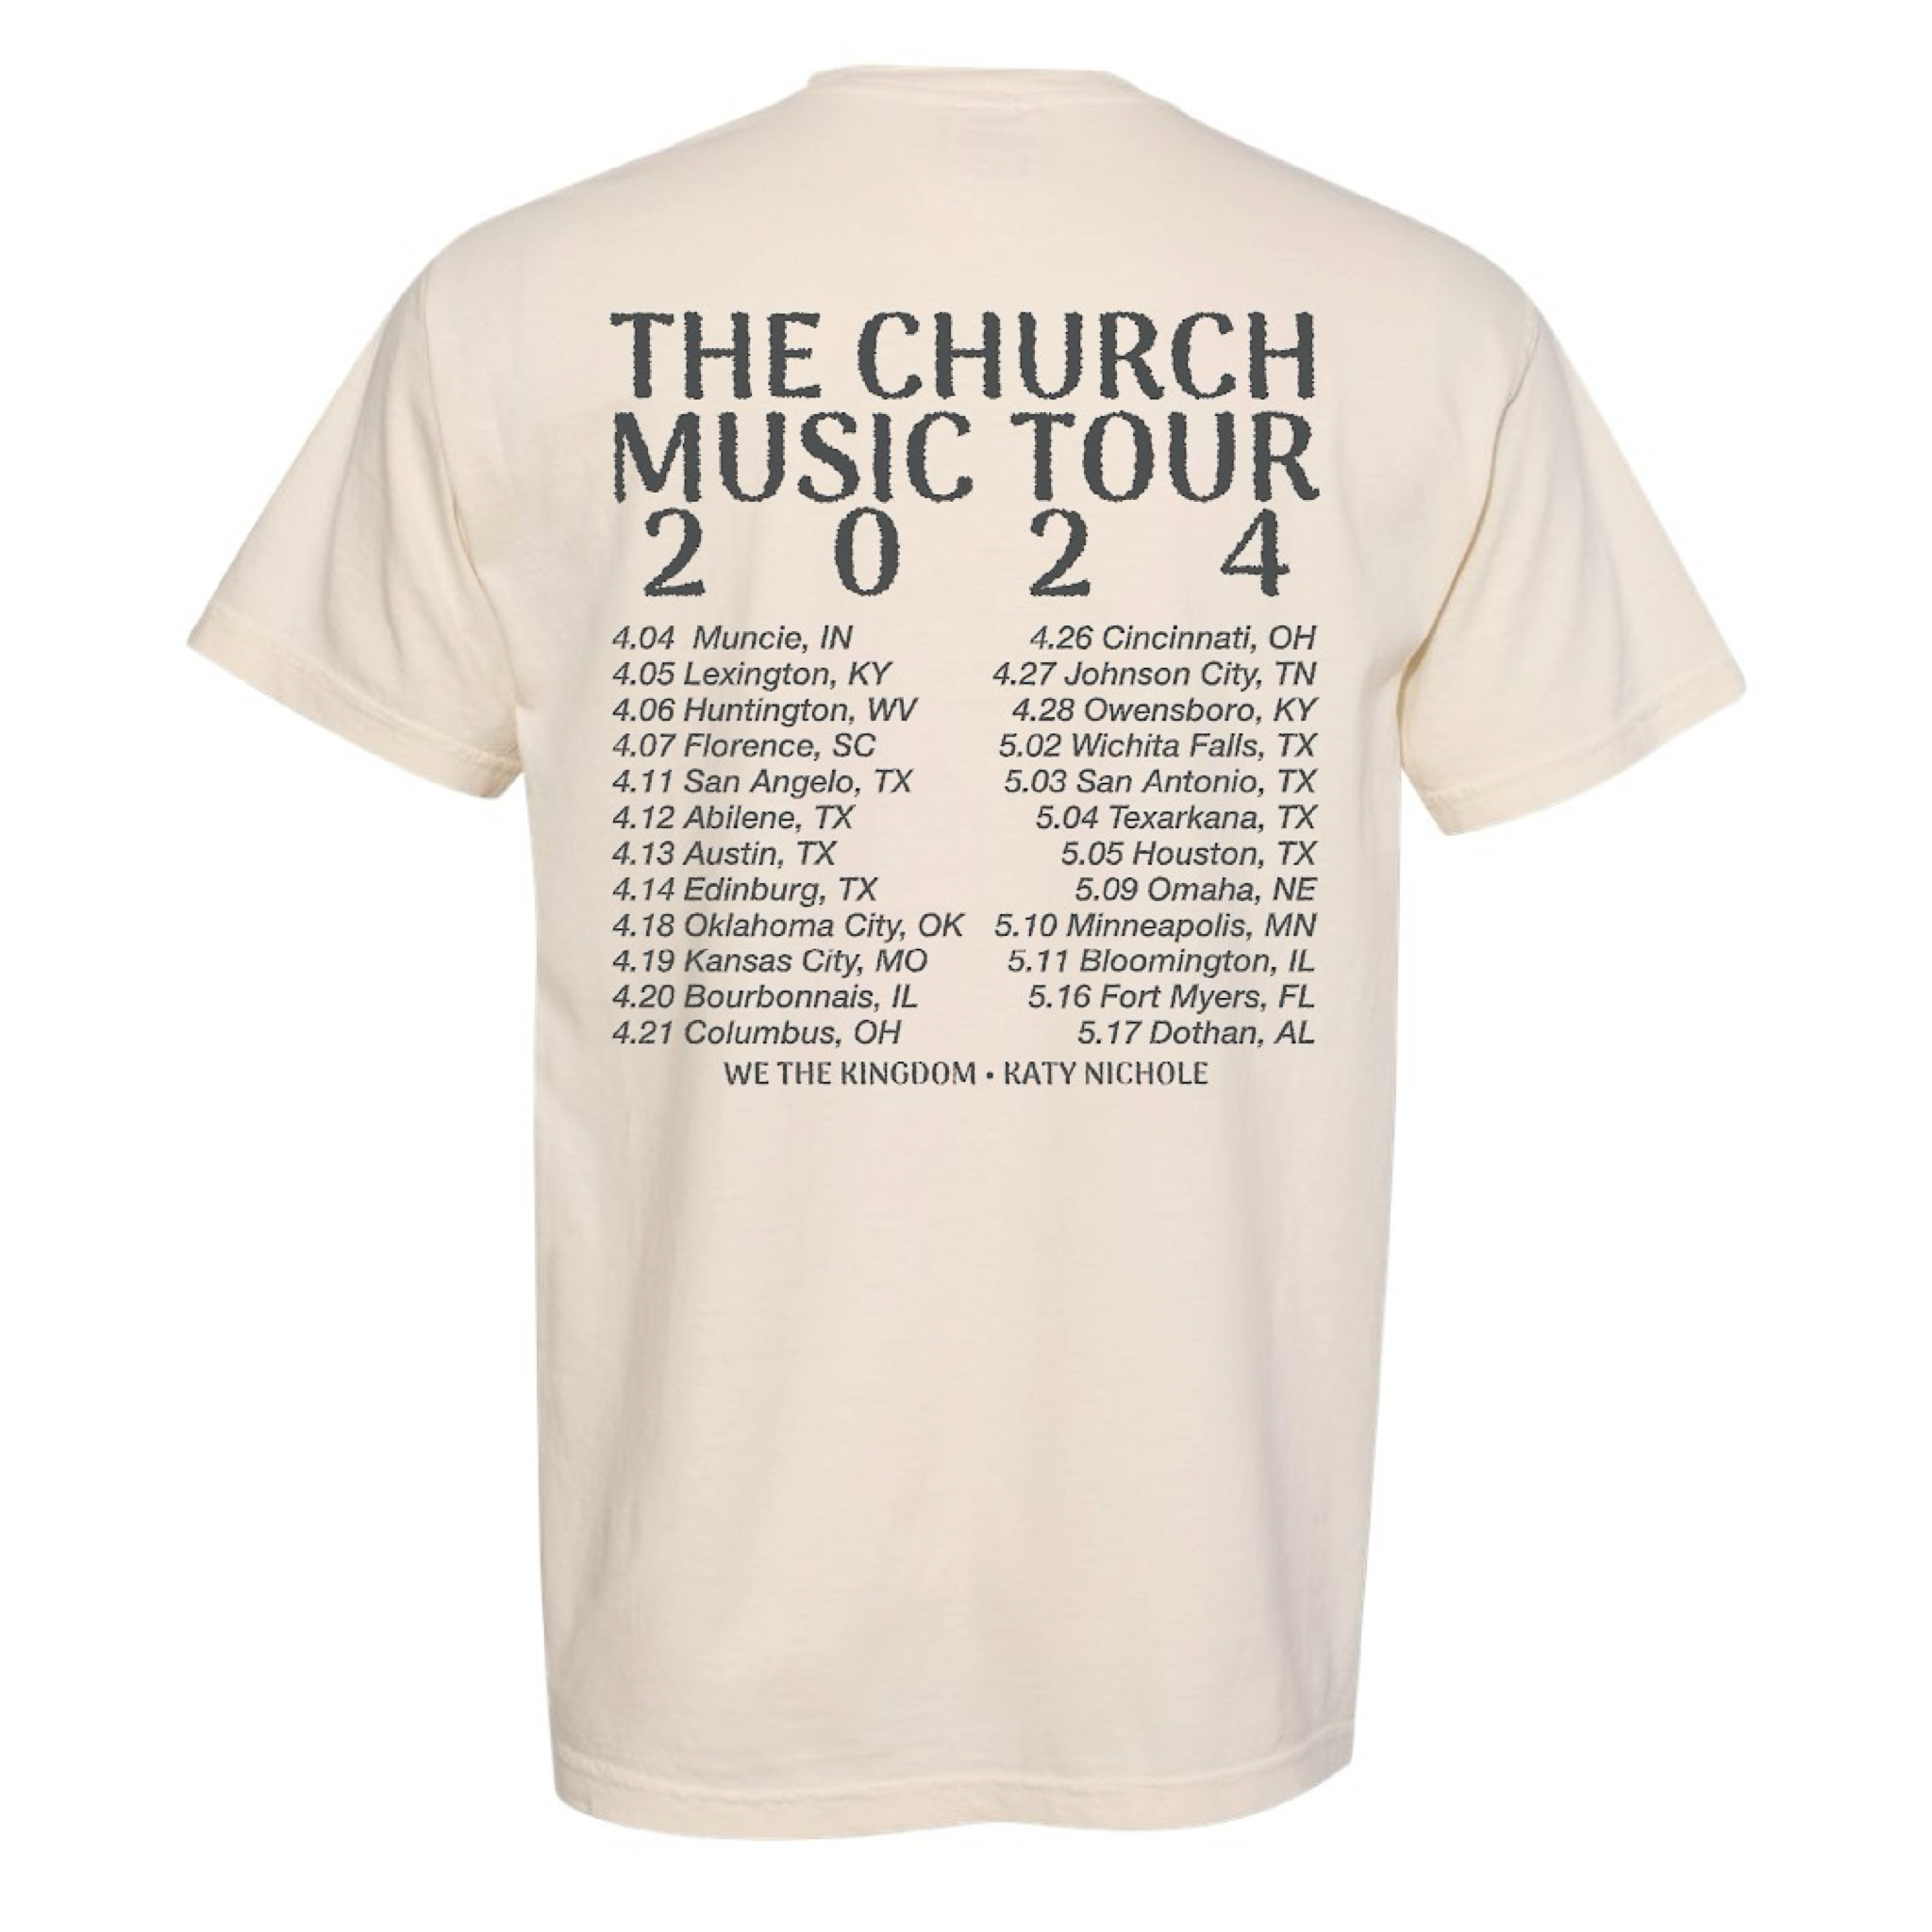 THE CHURCH MUSIC TOUR SHIRT